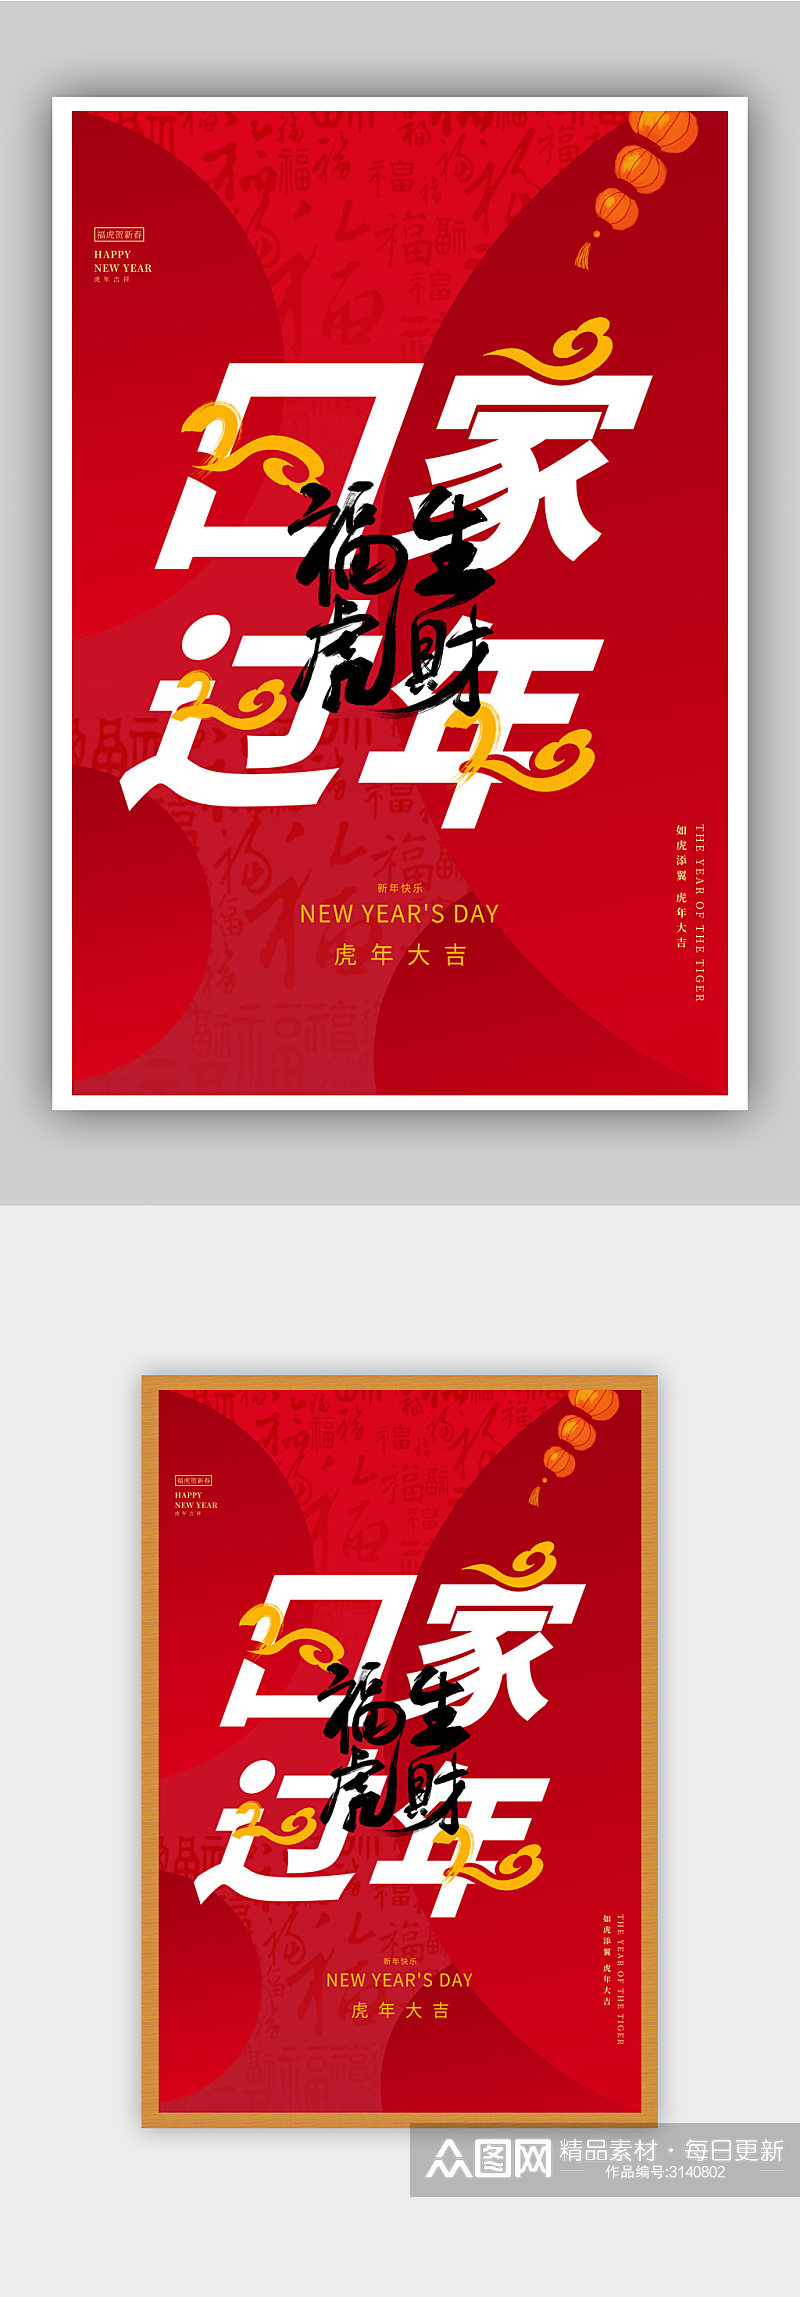 红色创意大气虎年新年节日海报素材